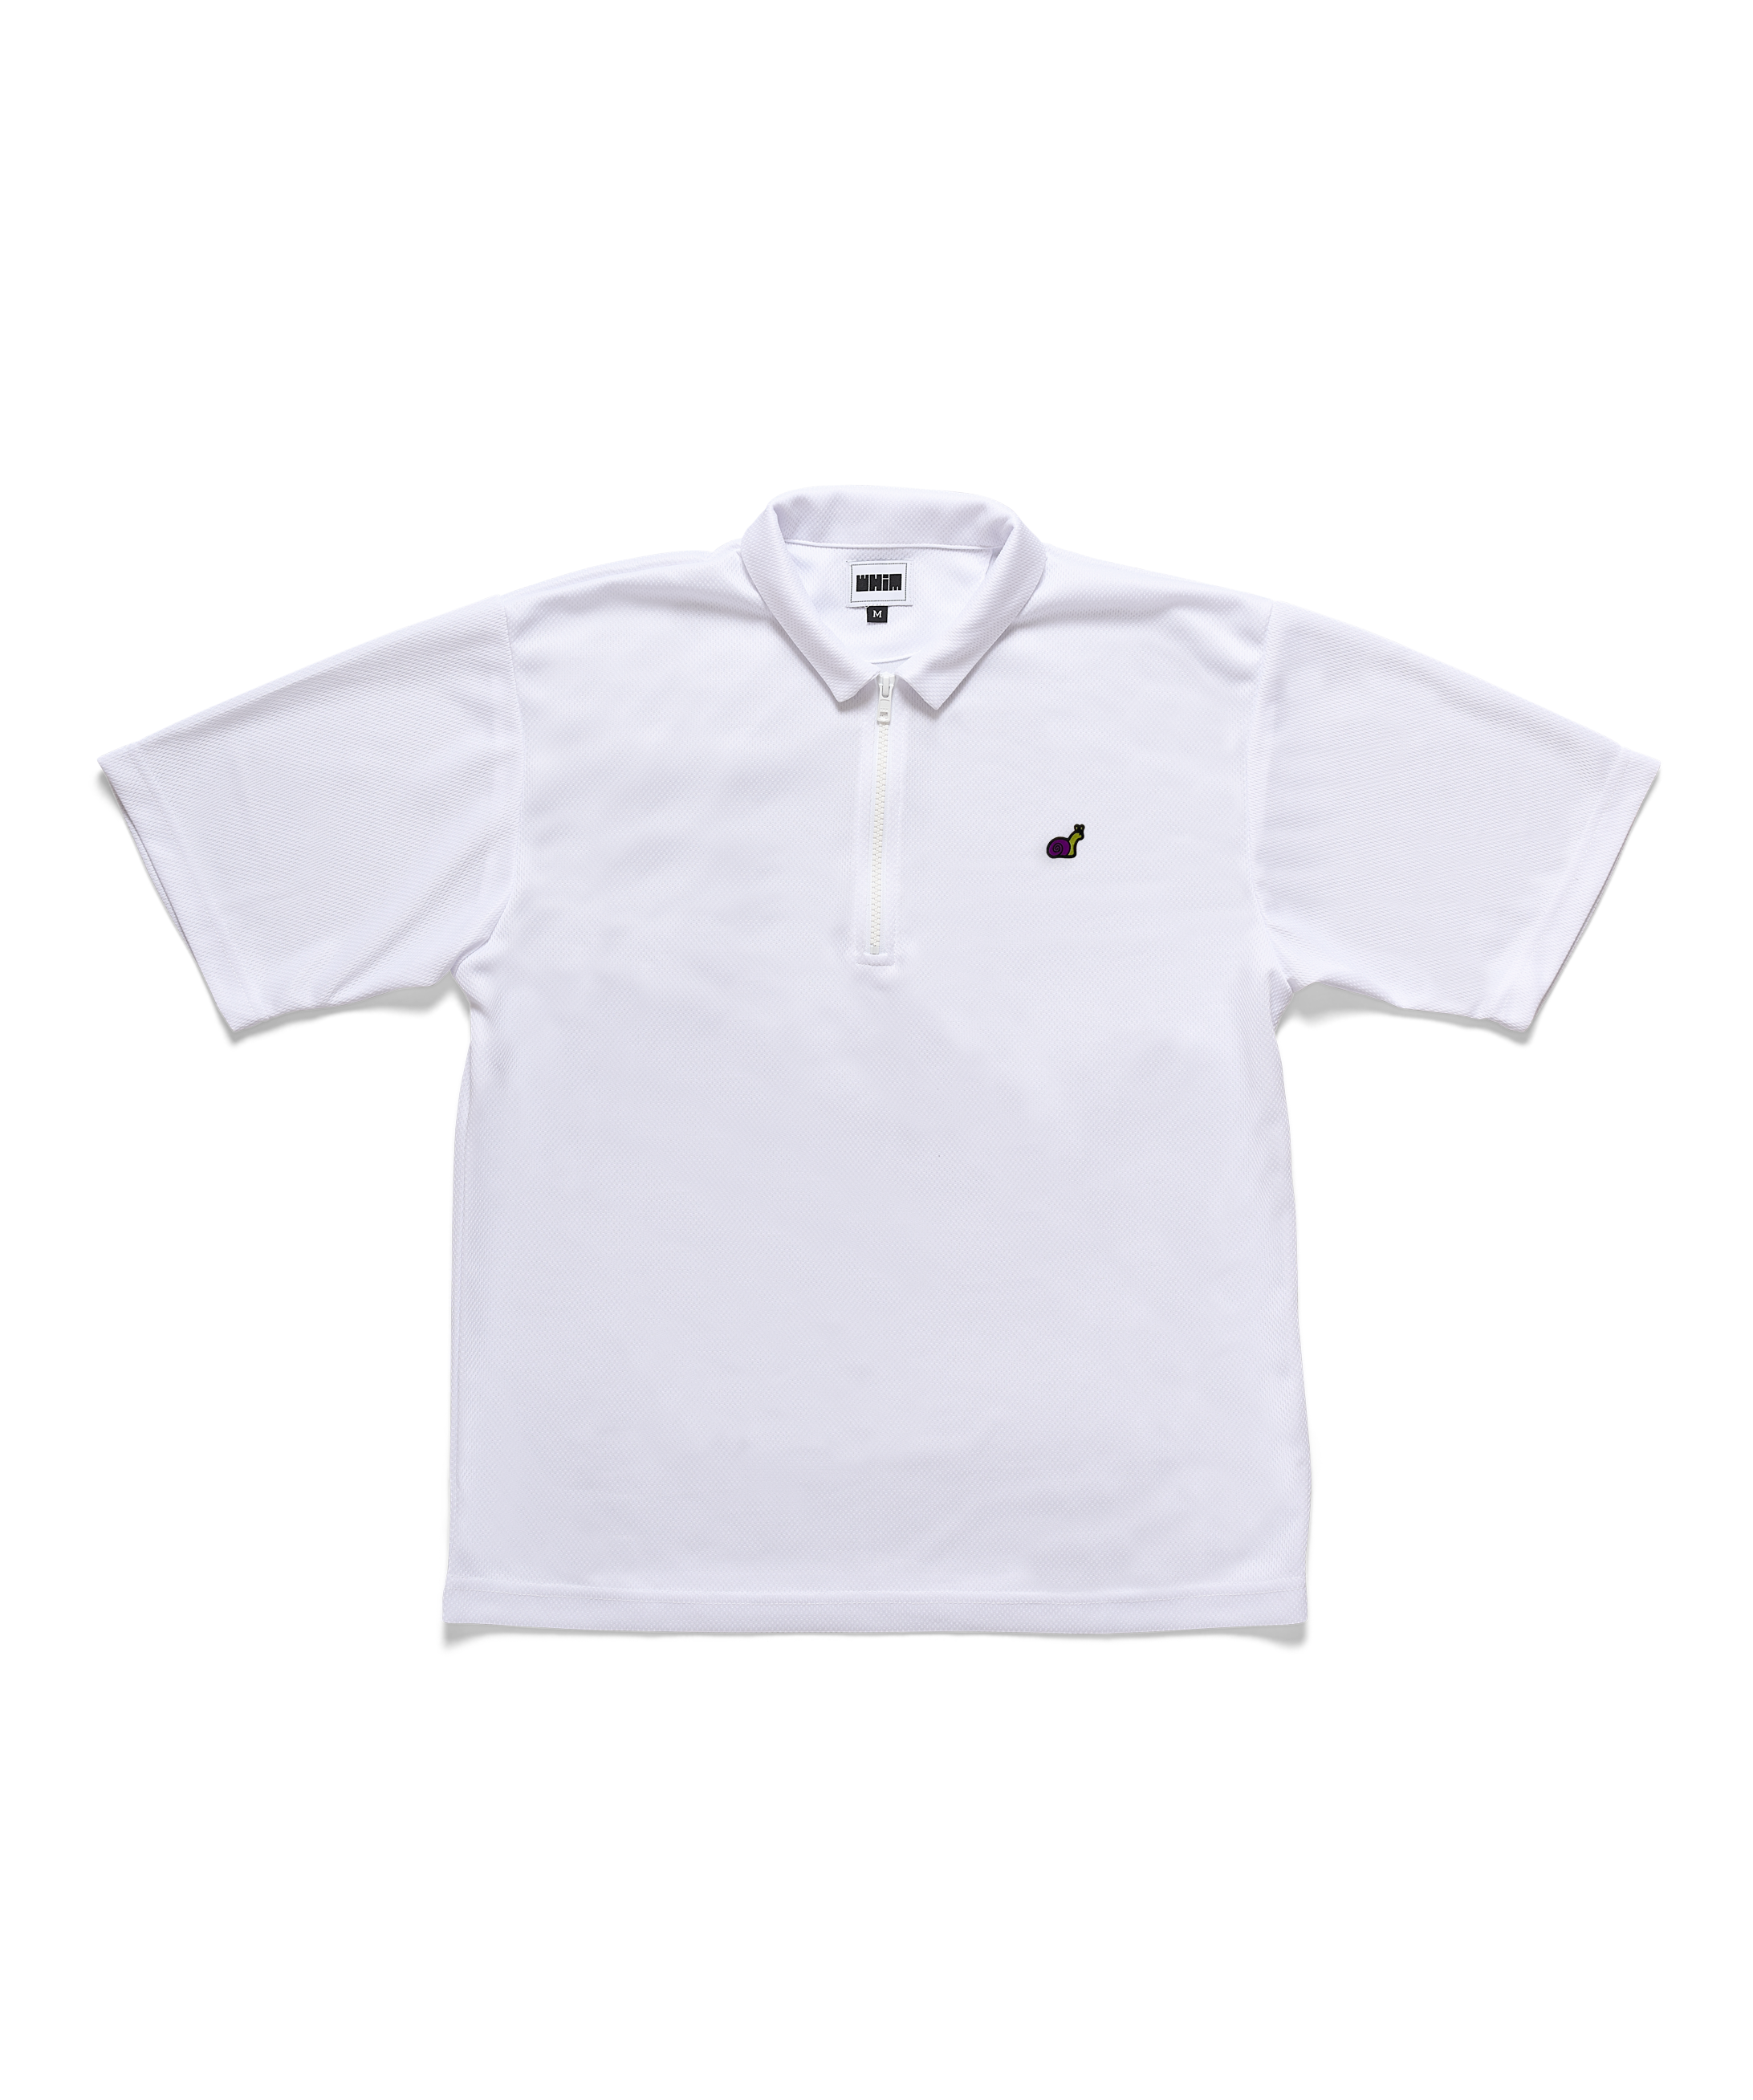 "Bruce" Snail Mesh 1/4 Zip Golf Shirt